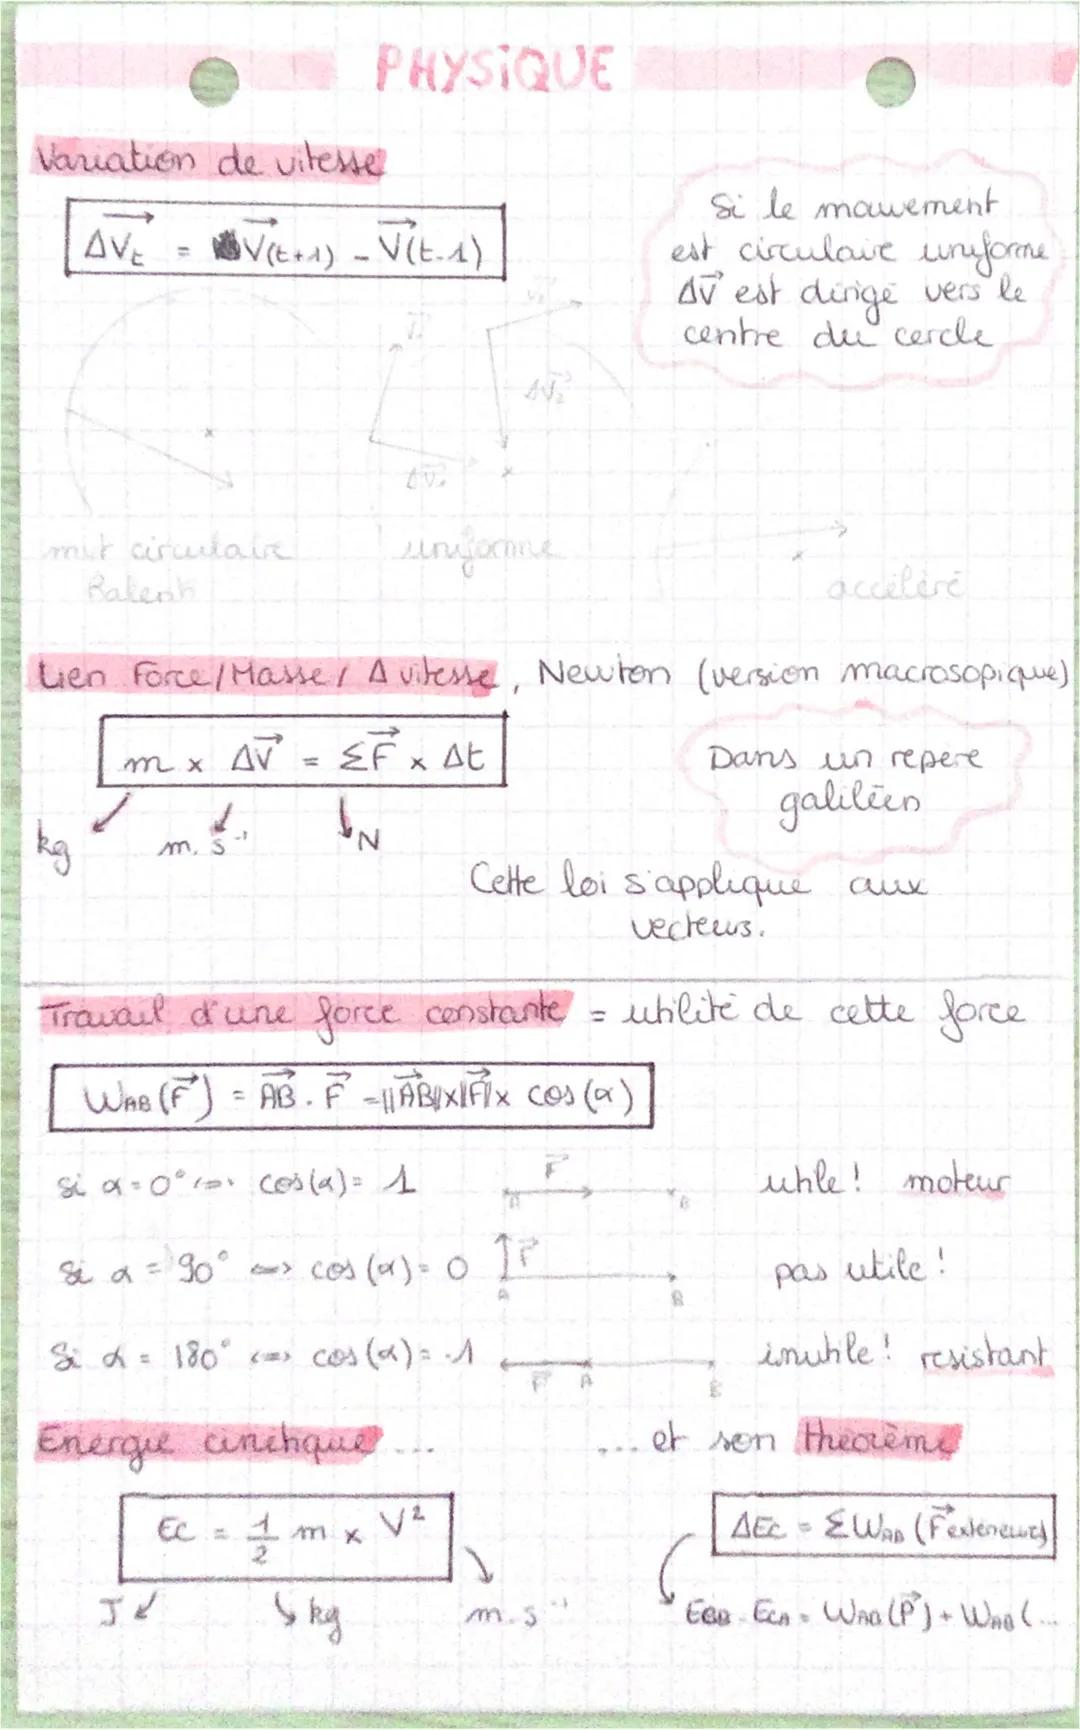 Interaction gravitationnelle,
→ attractive
force de B
exercée sur A
valeur: ||FB₁₂ || = G
X
d: distance A. B en m
G = 6,67.10
m: masse en
GA